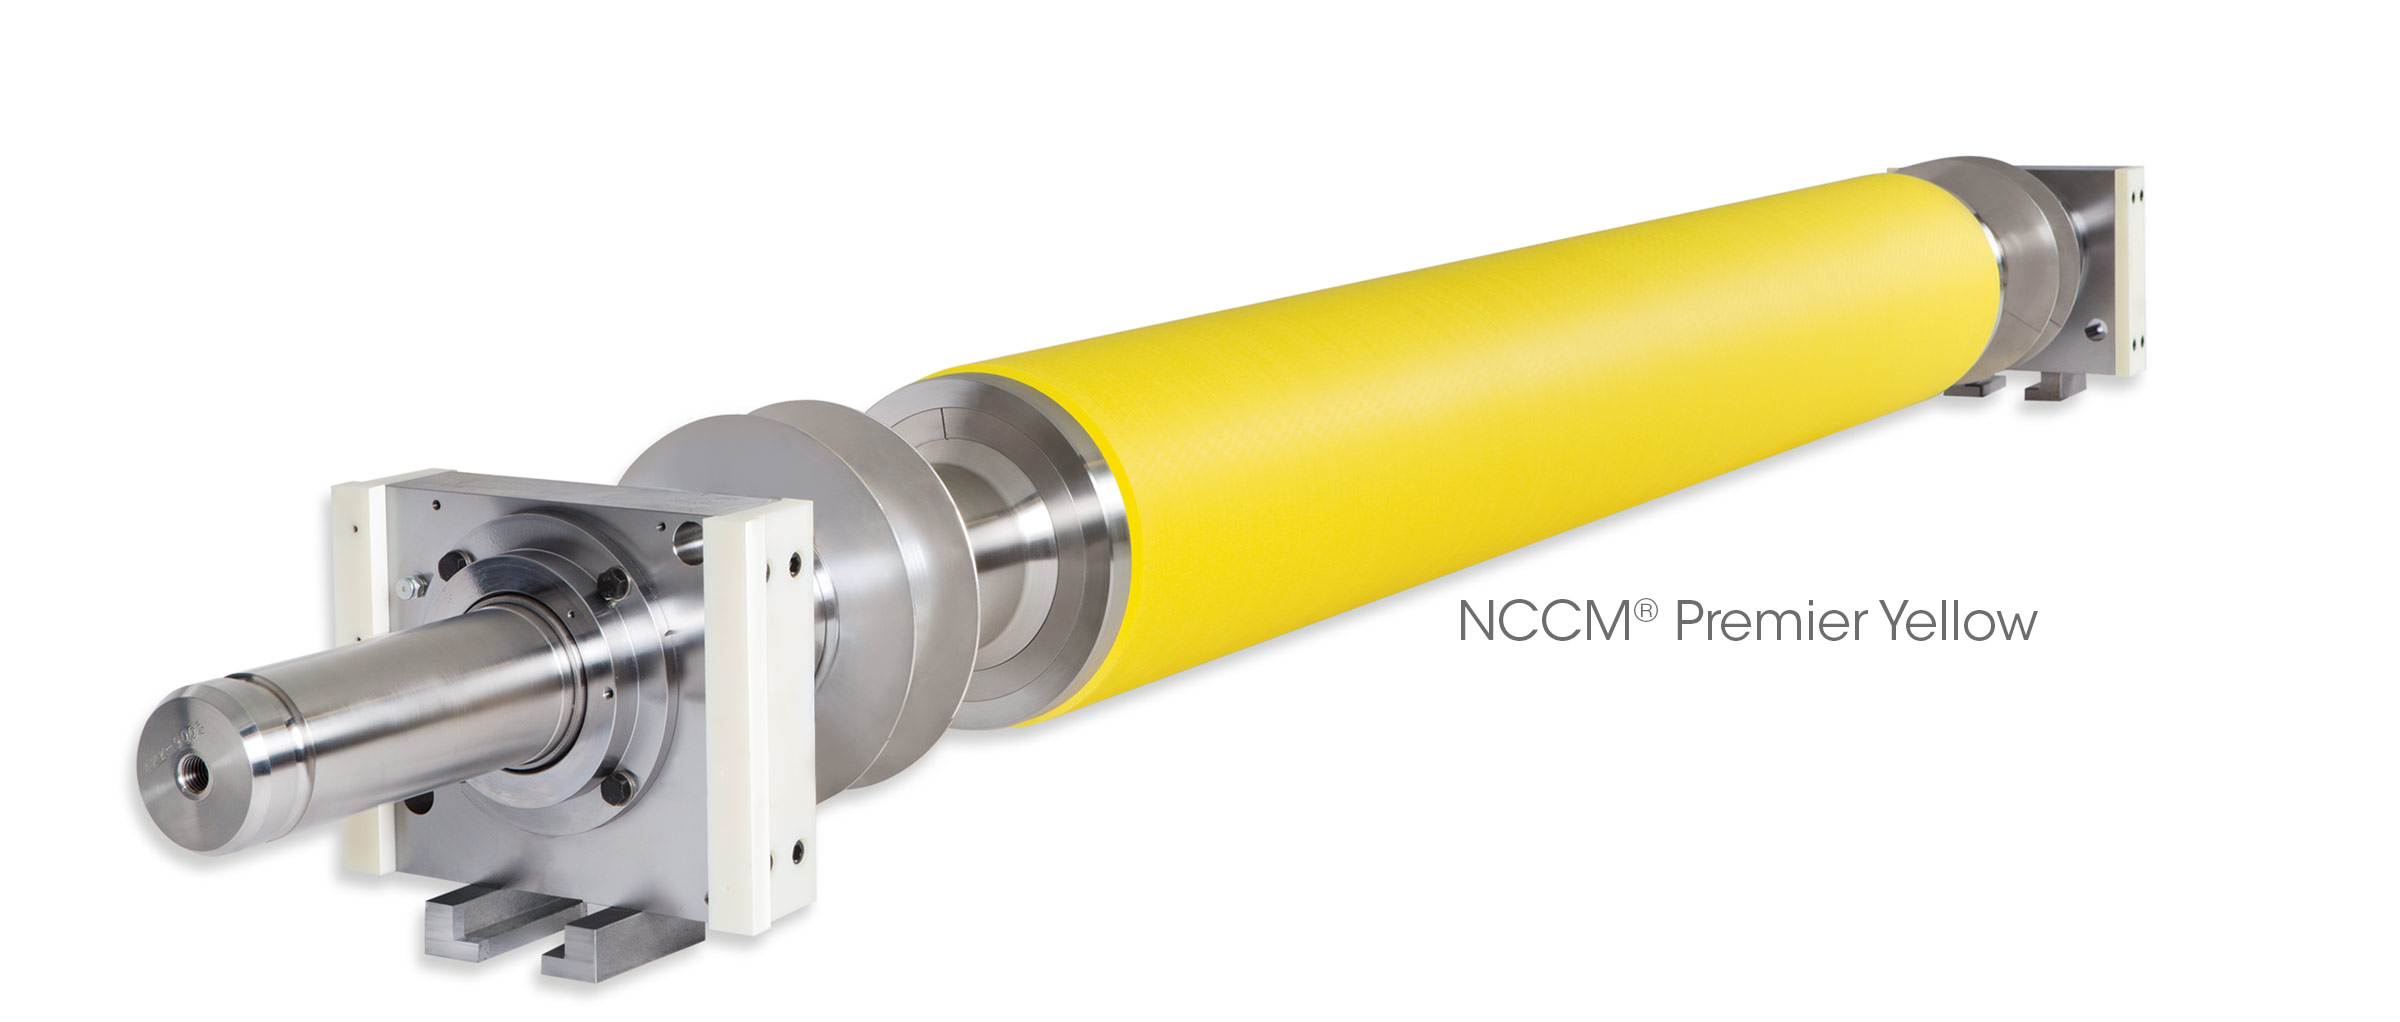 NCCM Premier Yellow